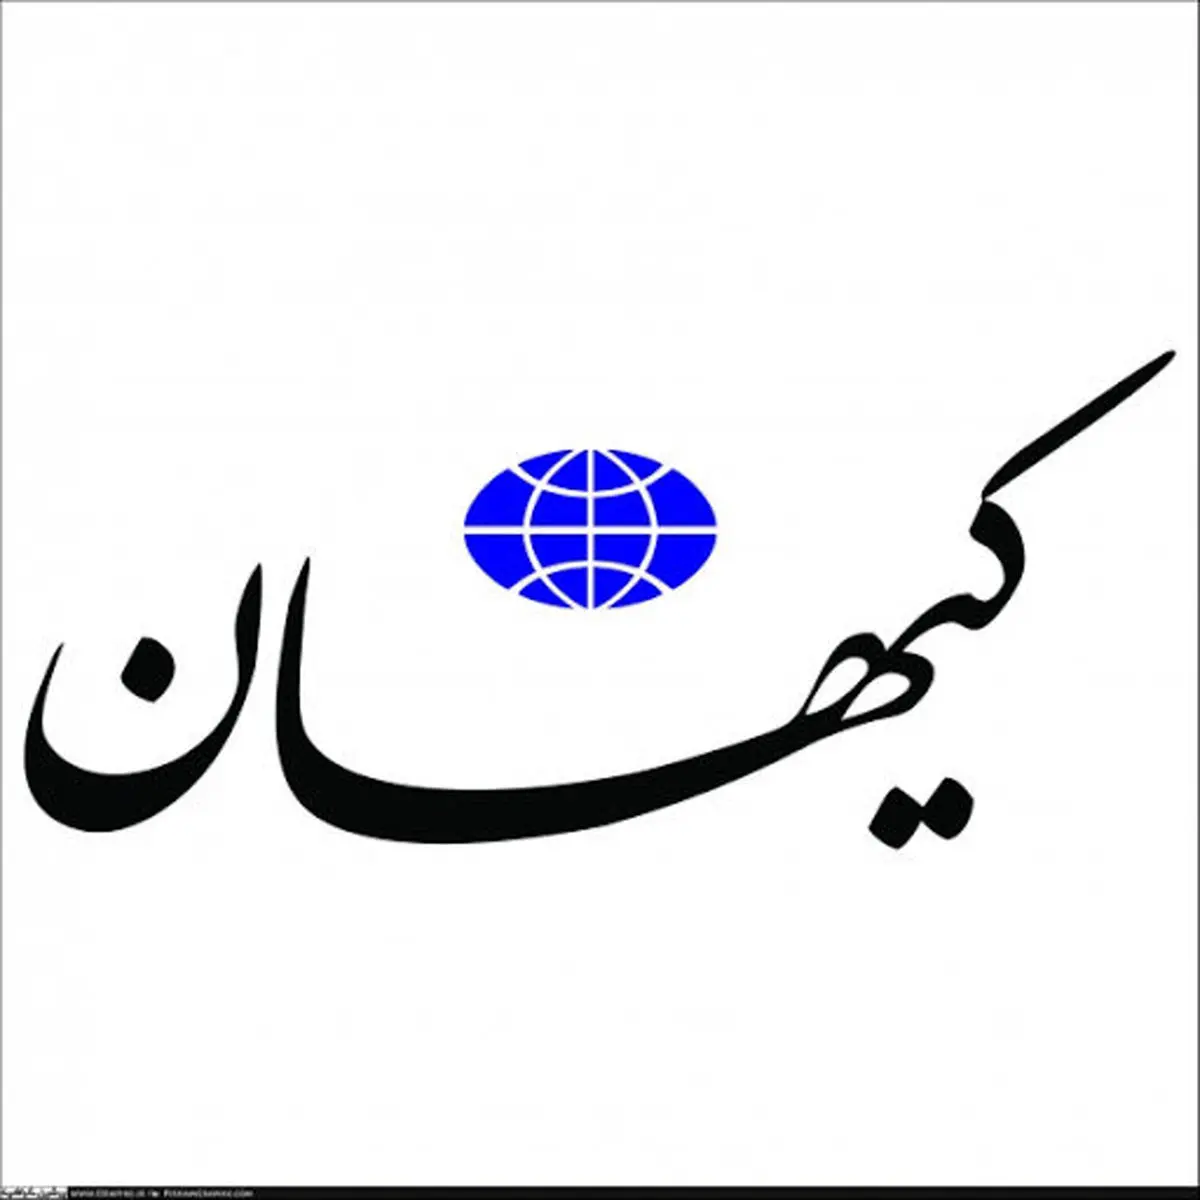 کیهان: عده‌ای به دنبال گذار از جمهوری اسلامی به حکومت اسلامی هستند